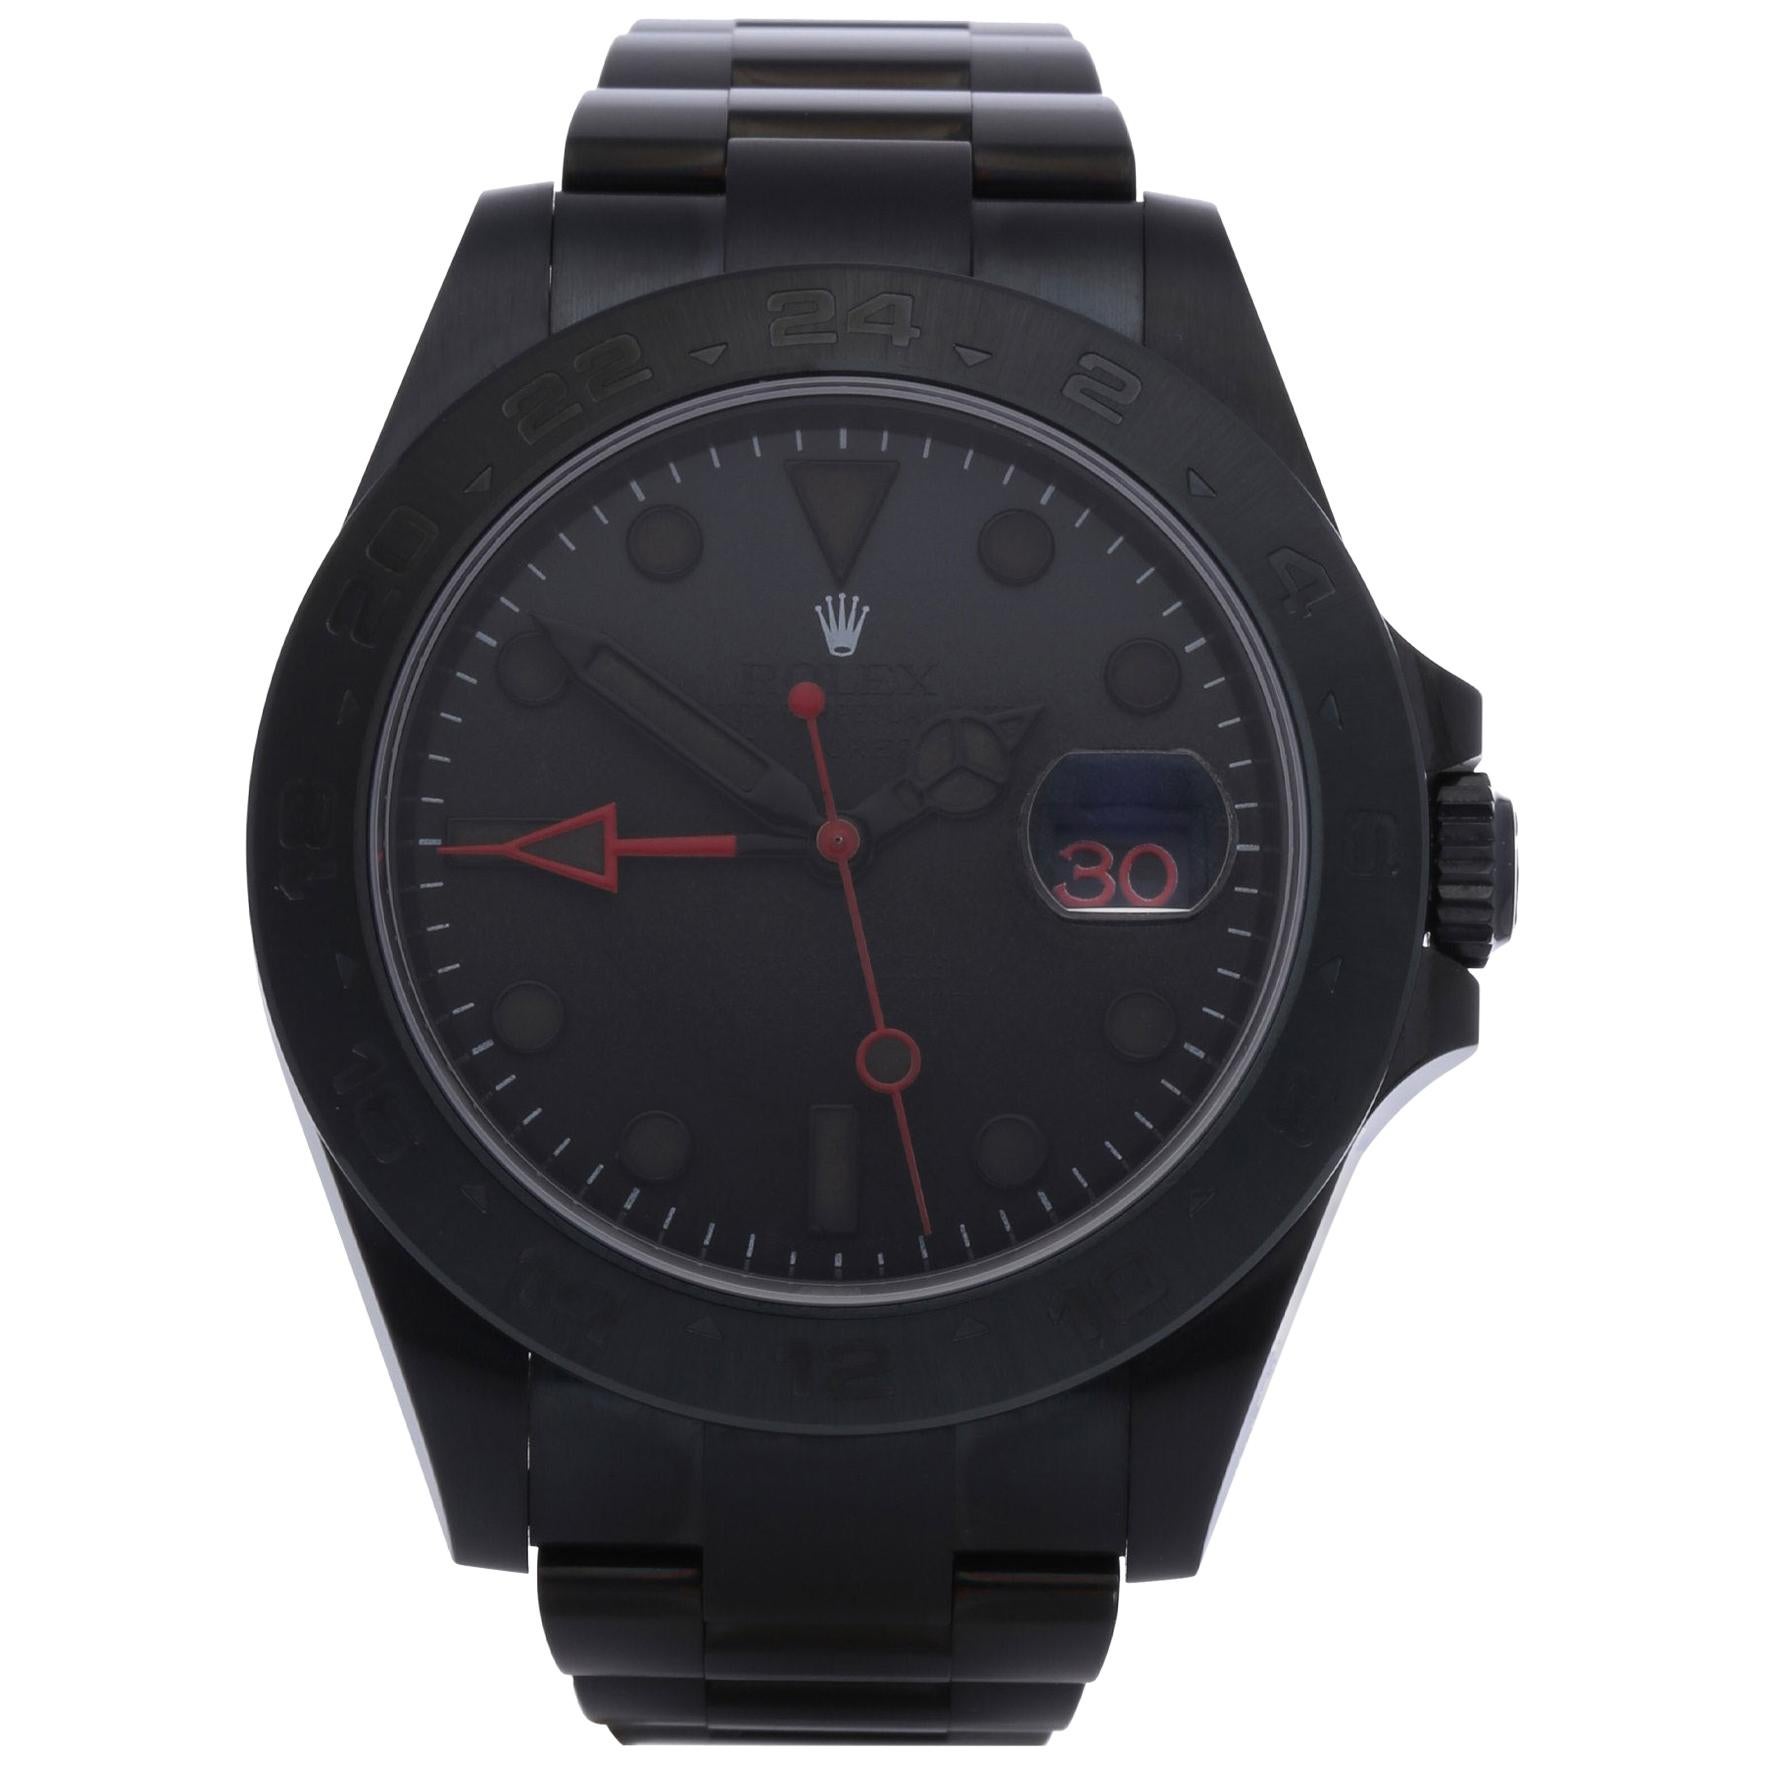 Rolex Explorer II 216570 Men's DLC Coated Stainless Steel Watch